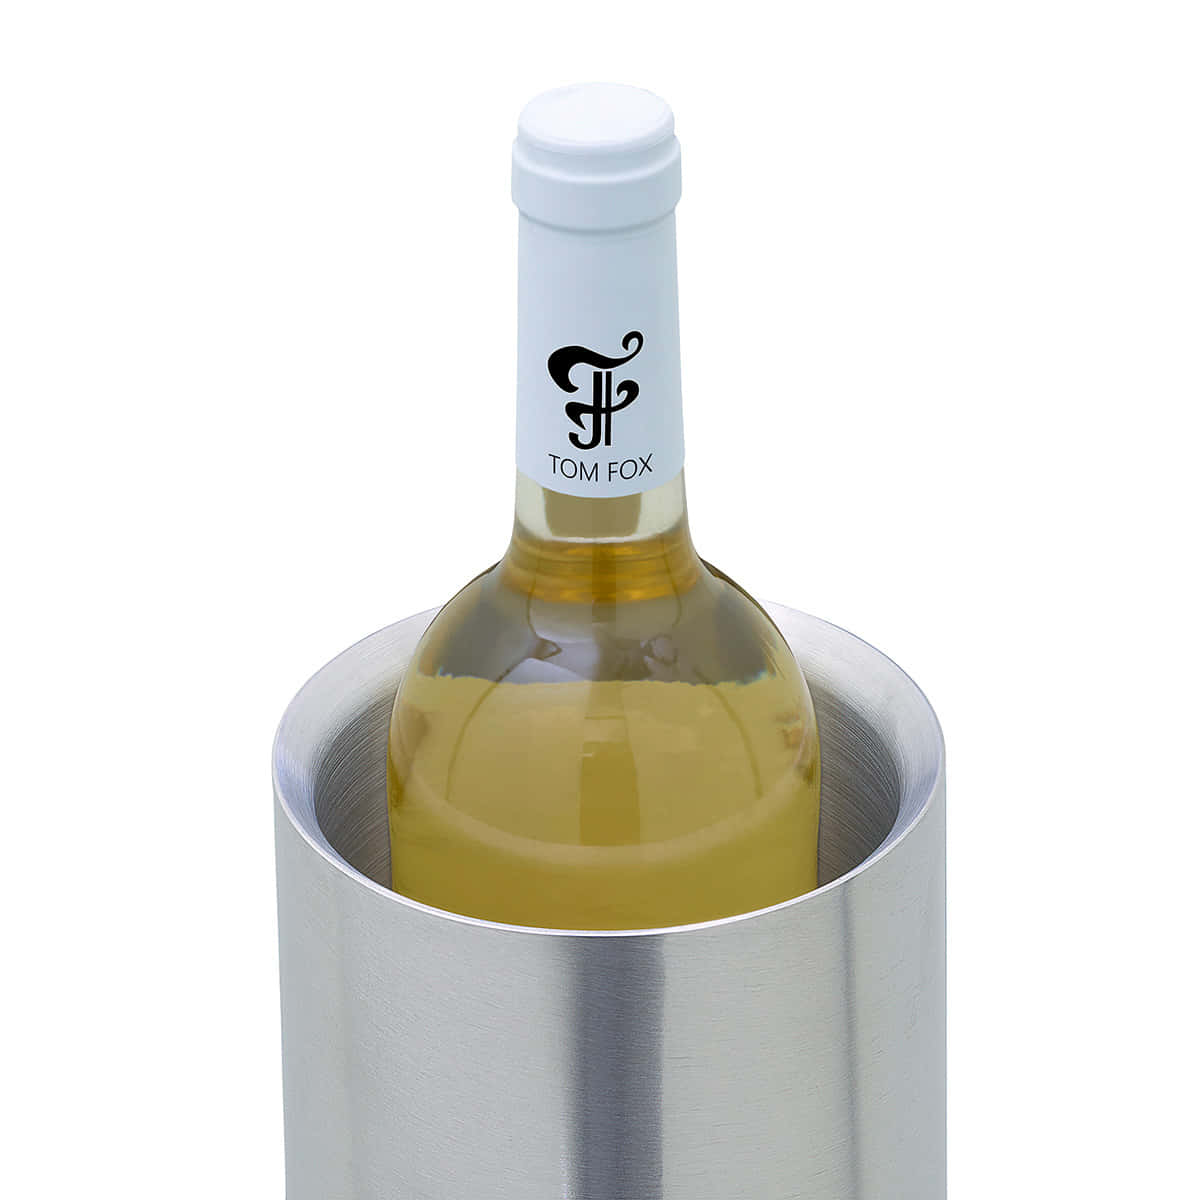 Detailansicht - doppelwandiger Flaschenkühler aus Edelstahl mit Weißweinflasche